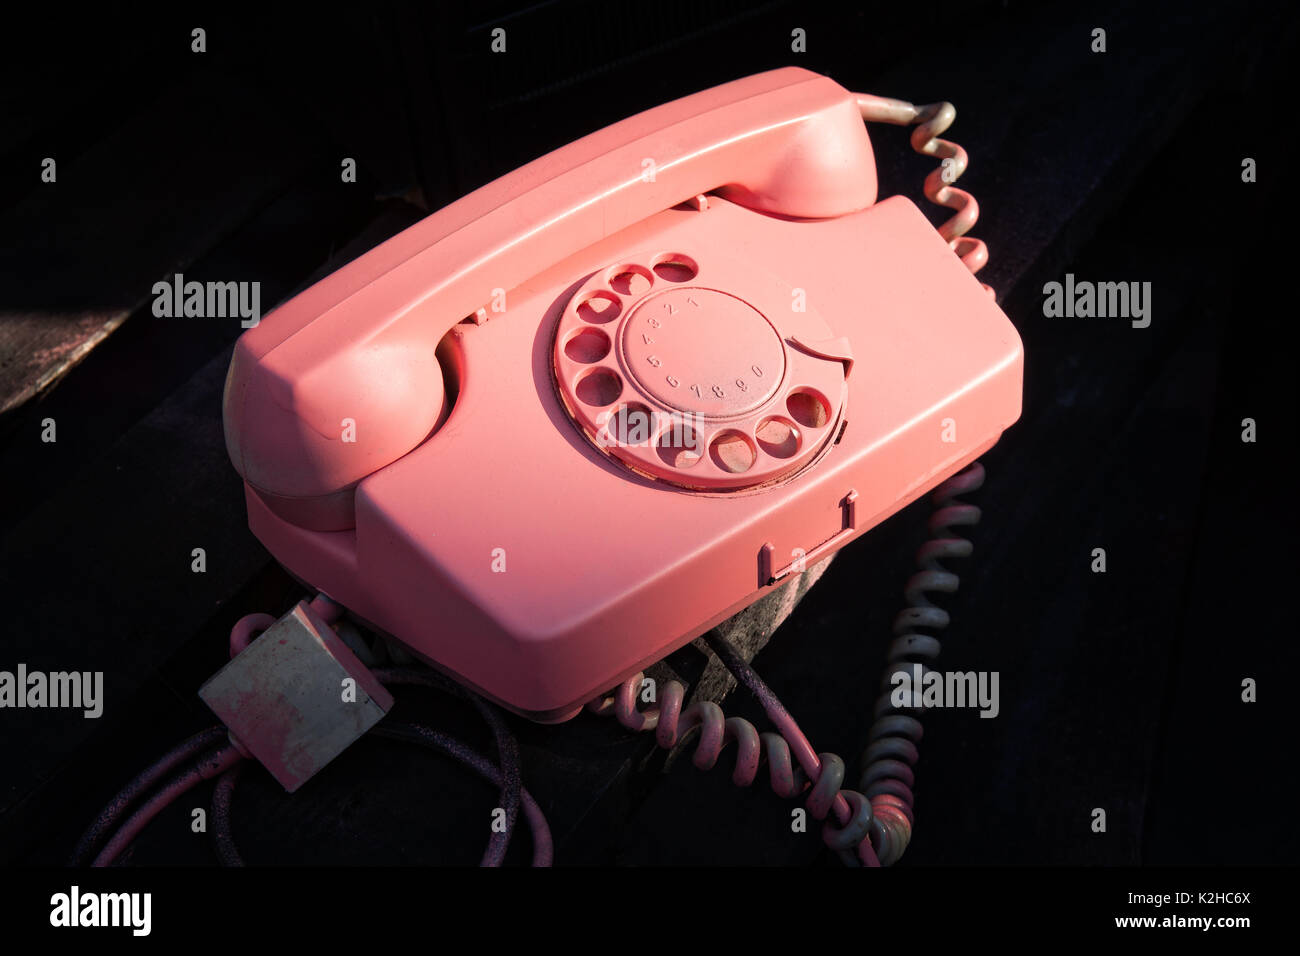 Iluminado de color rosa vintage retro teléfono usado contra el fondo oscuro. La tecnología de la comunicación del pasado. Foto de stock